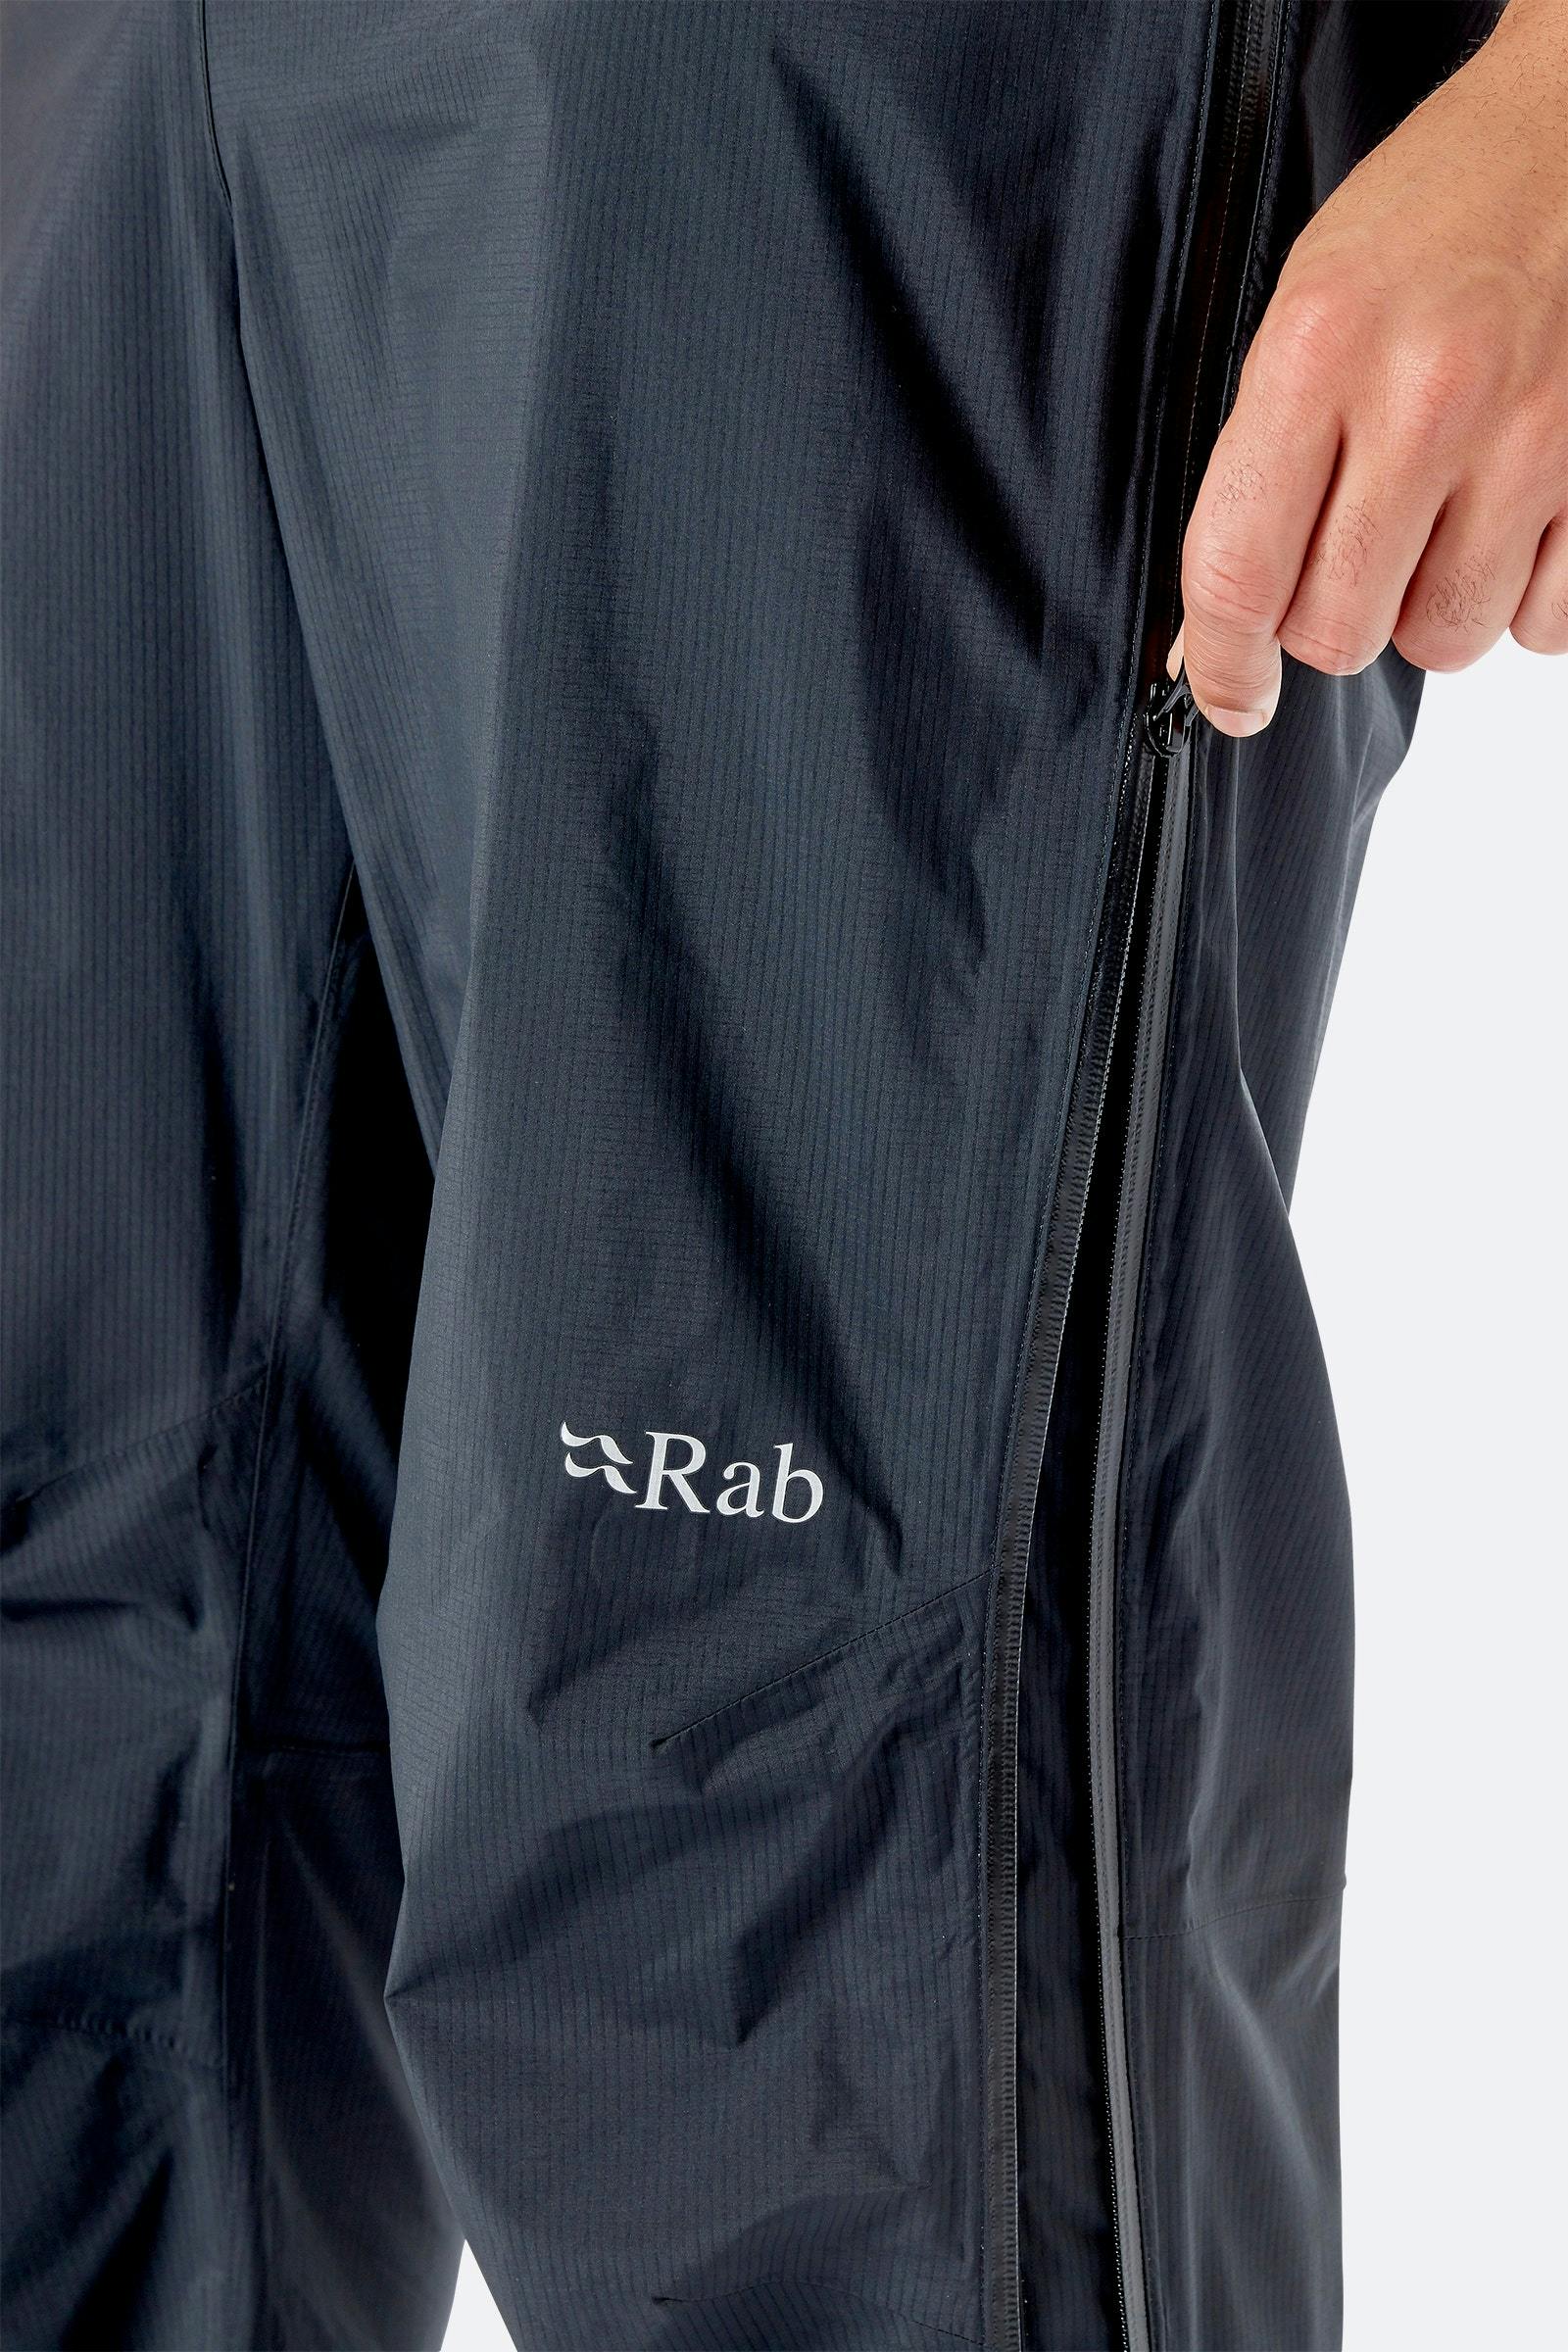 Rab Men's Downpour Plus 2.0 Pants